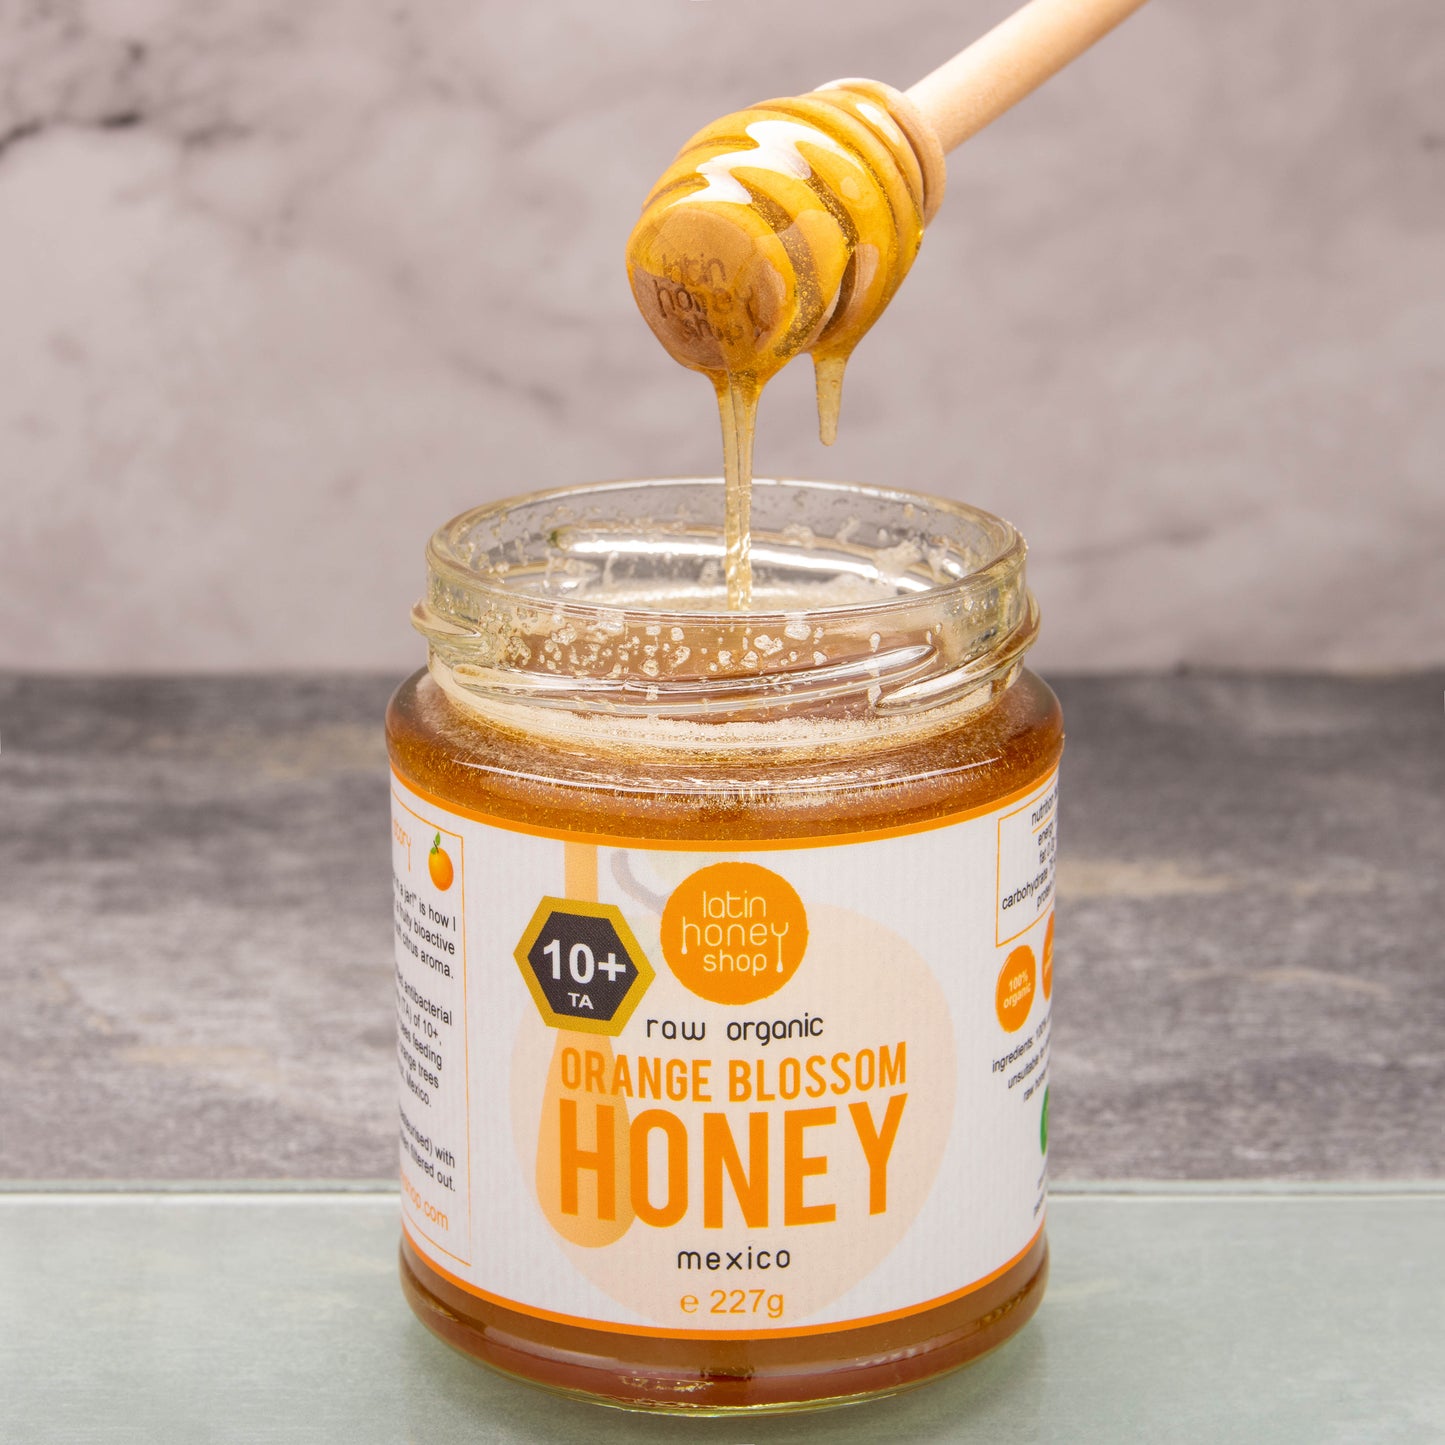 Latin honningbutik 10+ aktiv rå økologisk appelsinblomsthonning fra mexico